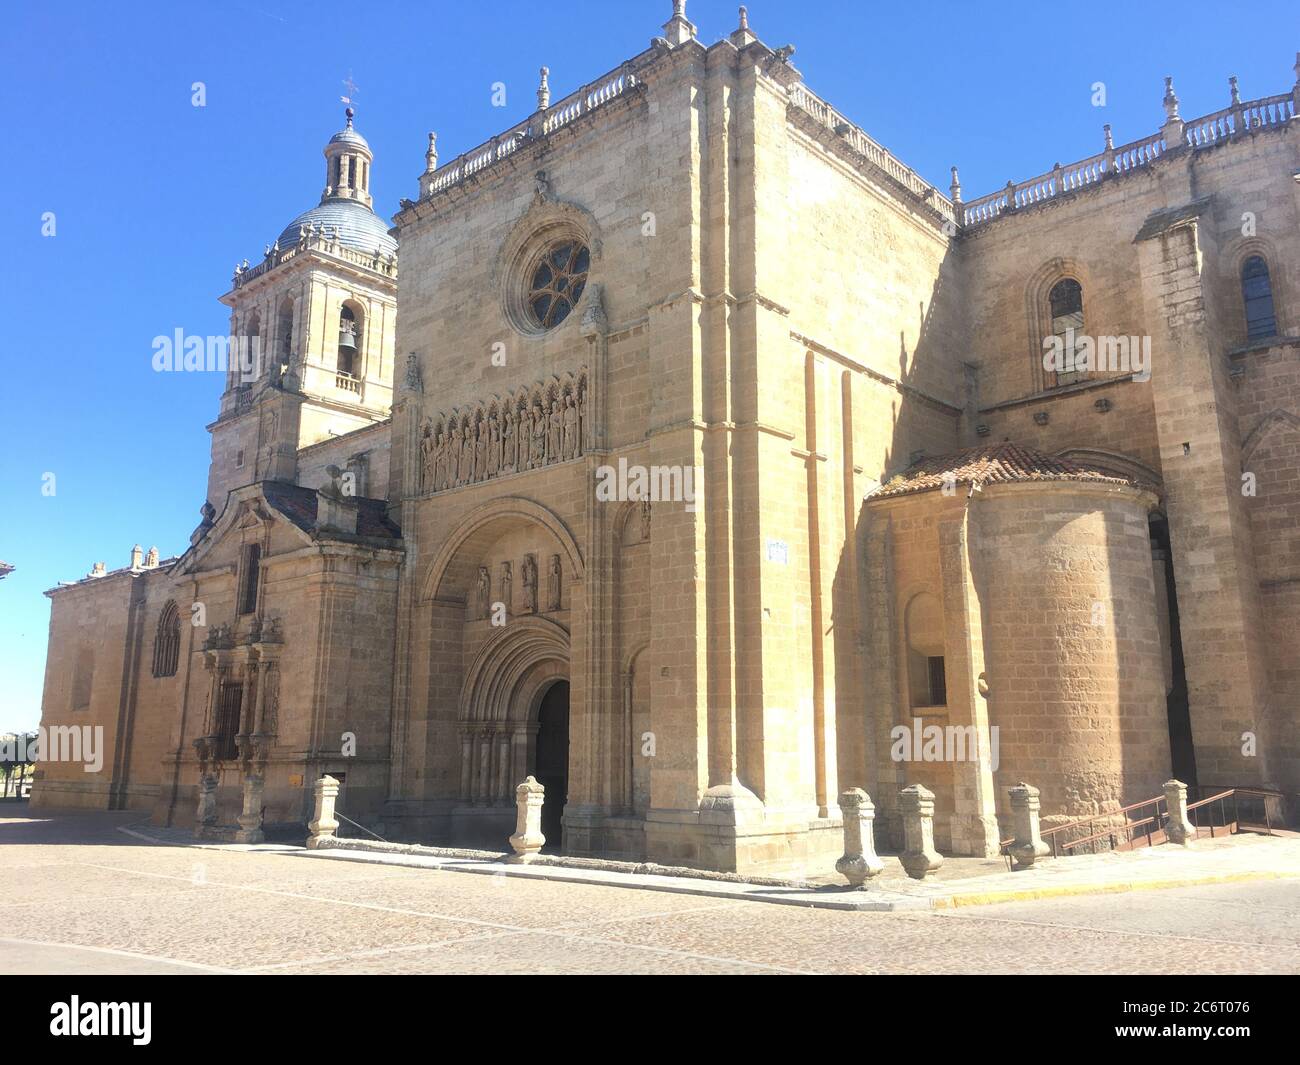 Facade of the cathedral of Ciudad Rodrigo Stock Photo